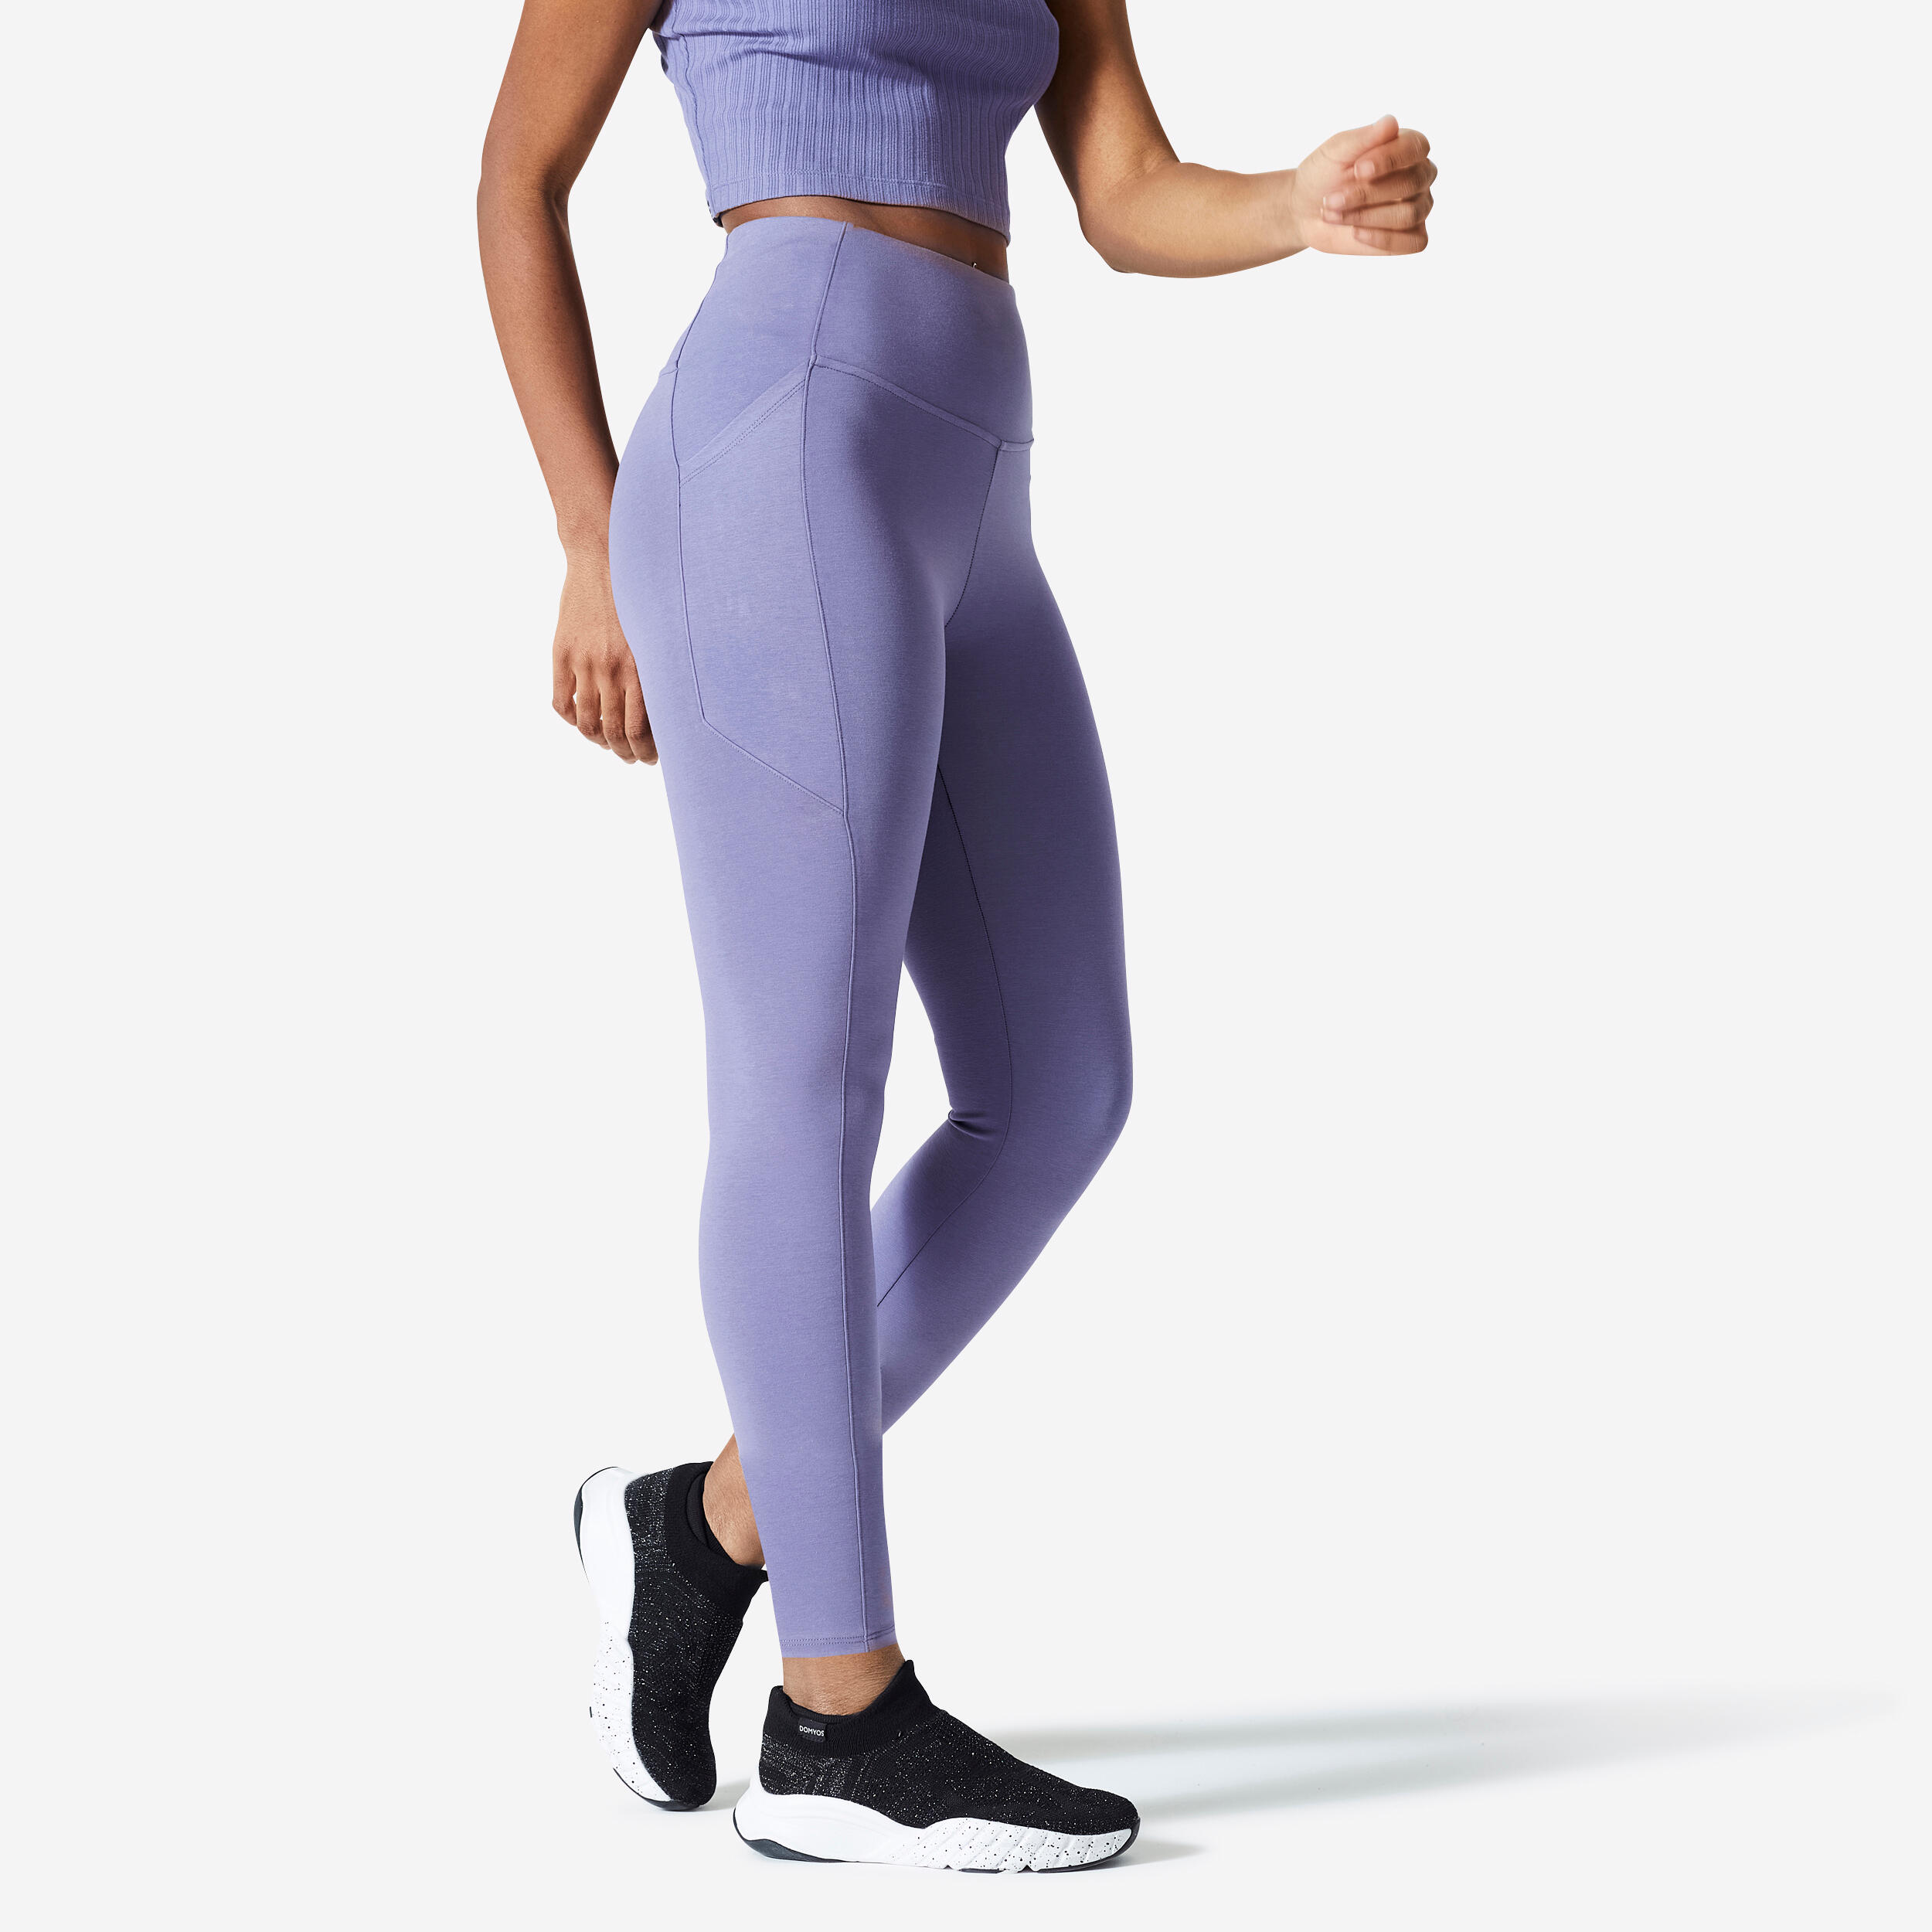 Lululemon Align Purple High Waist Leggings 10 - IU  Leggings are not pants,  High waisted leggings, High waisted